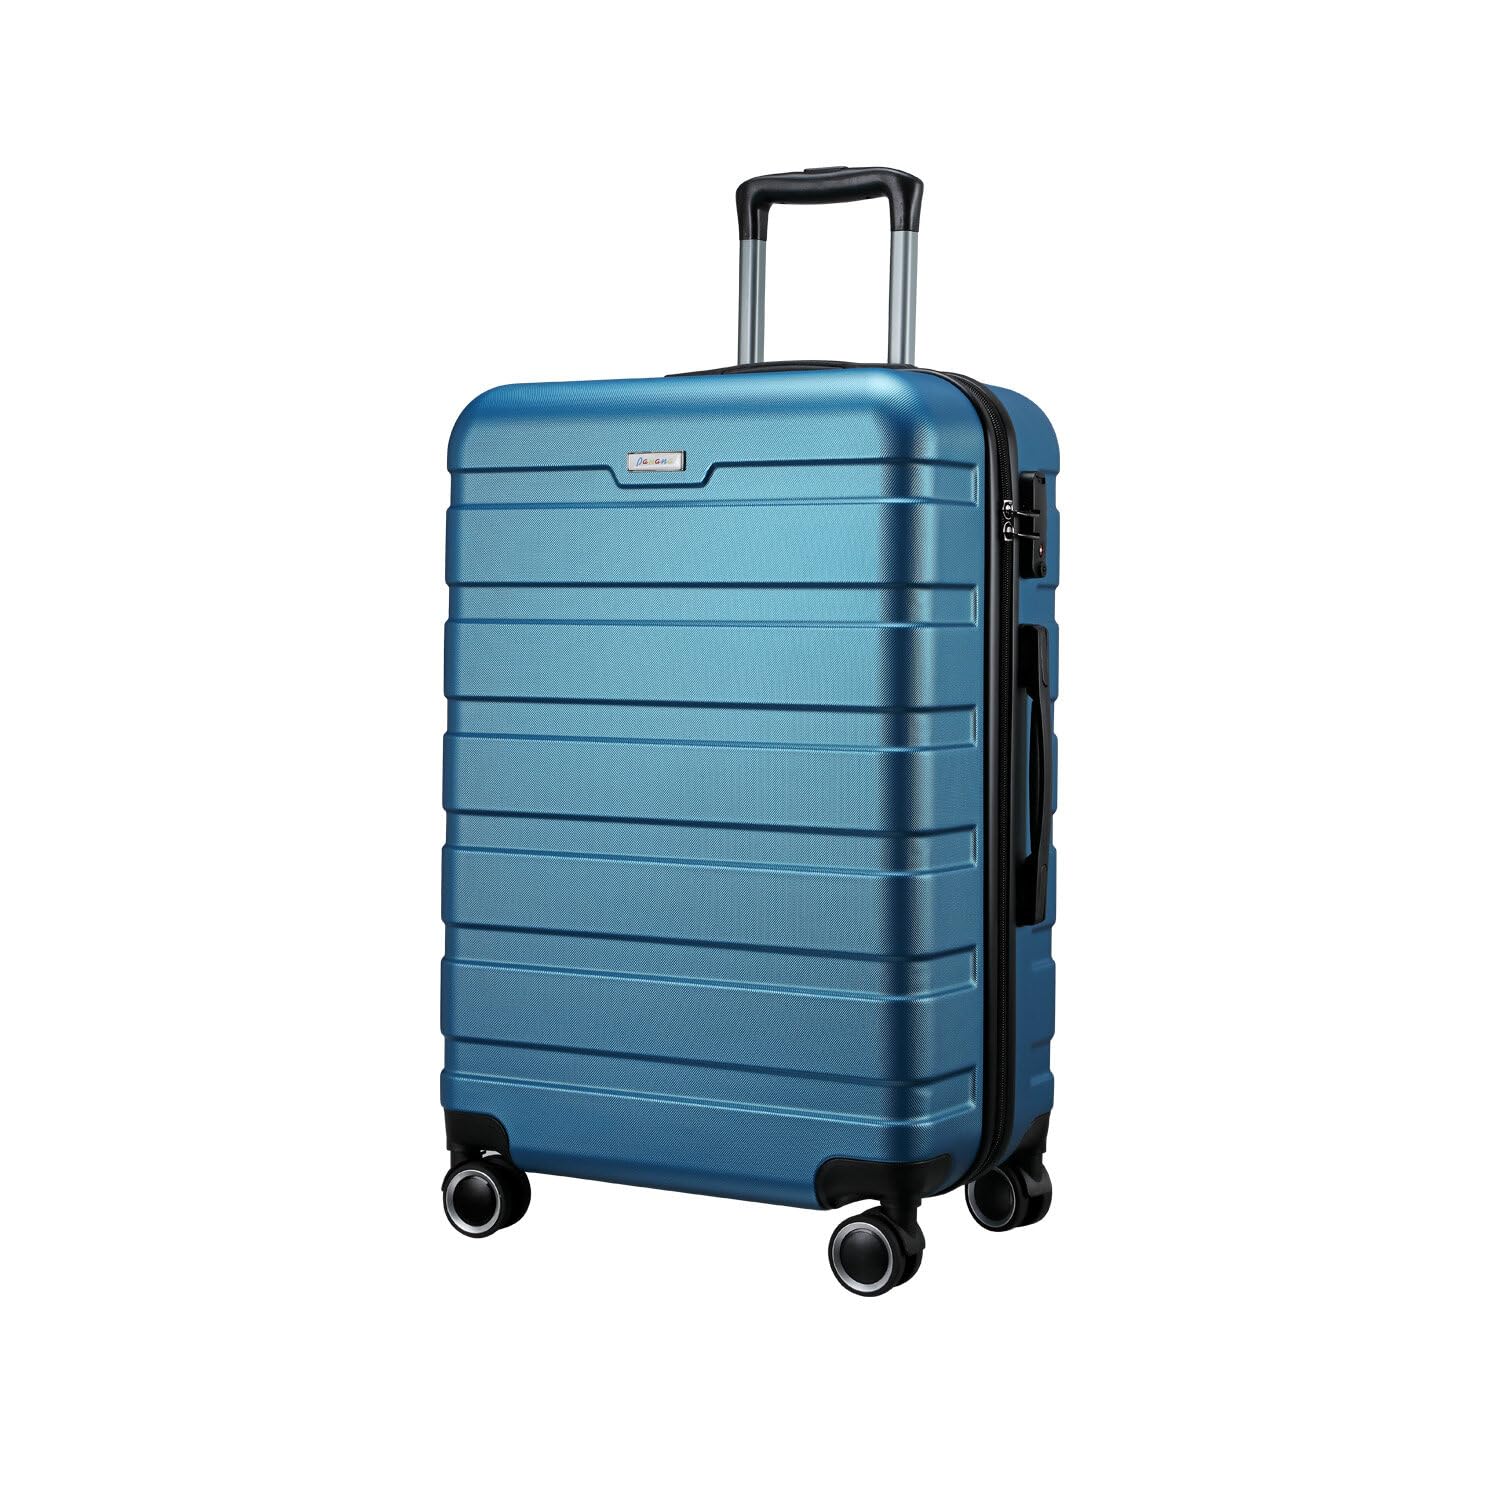 Panana Gepäck-Set, Koffer, Spinner, Hartschale, leicht, TSA-Schloss, Rot, 3-teiliges Set (20/24/28)), Blau (Caribbean Blue), 24 inch, modisch